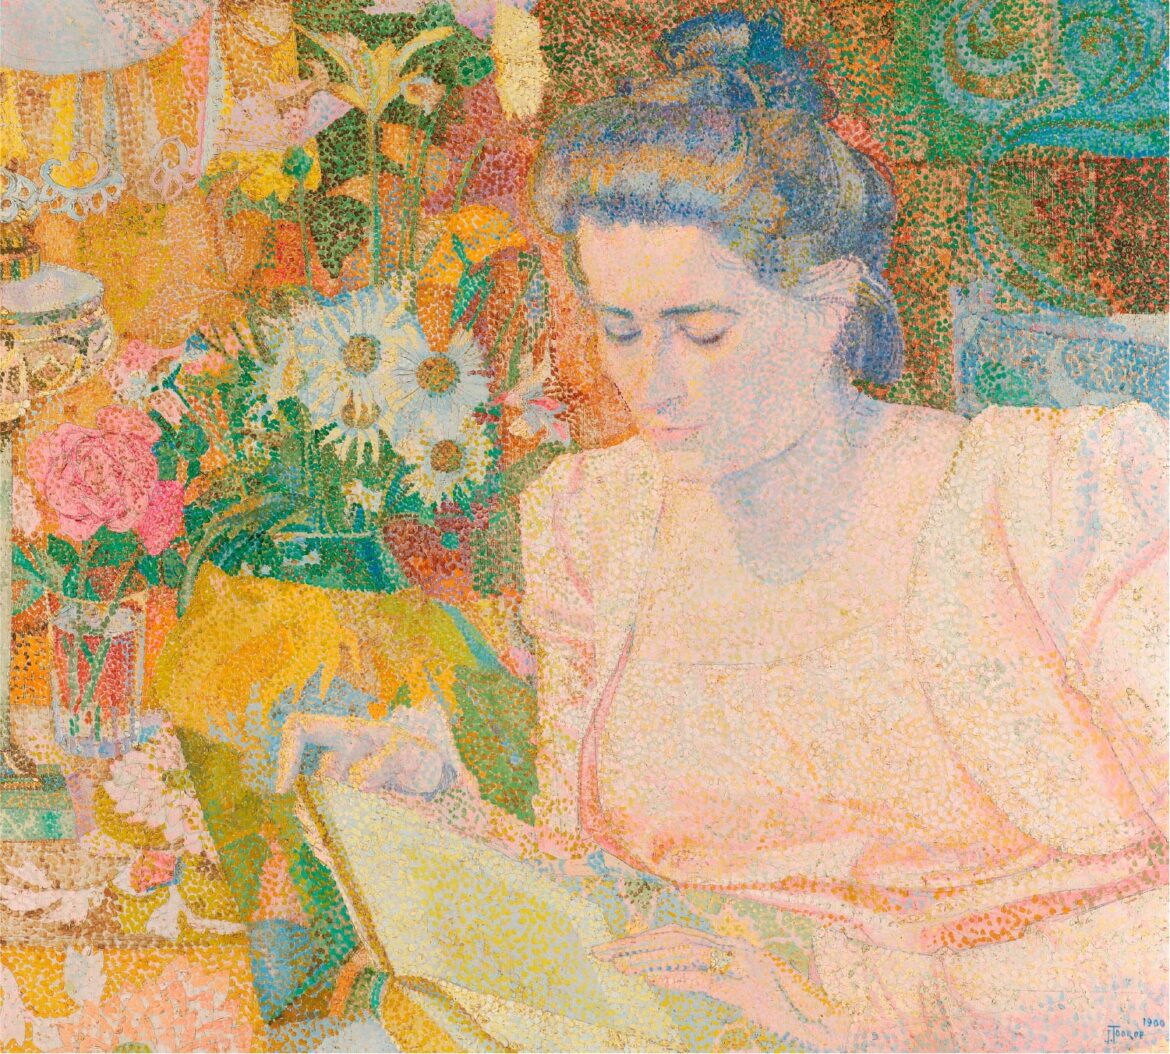 【無料壁紙】ヤン・トーロップ「マリー・ジャネット・ド・ランゲ夫人の肖像 (1900)」 / Jan Toorop_Portrait of Mrs Marie Jeannette de Lange (1900)